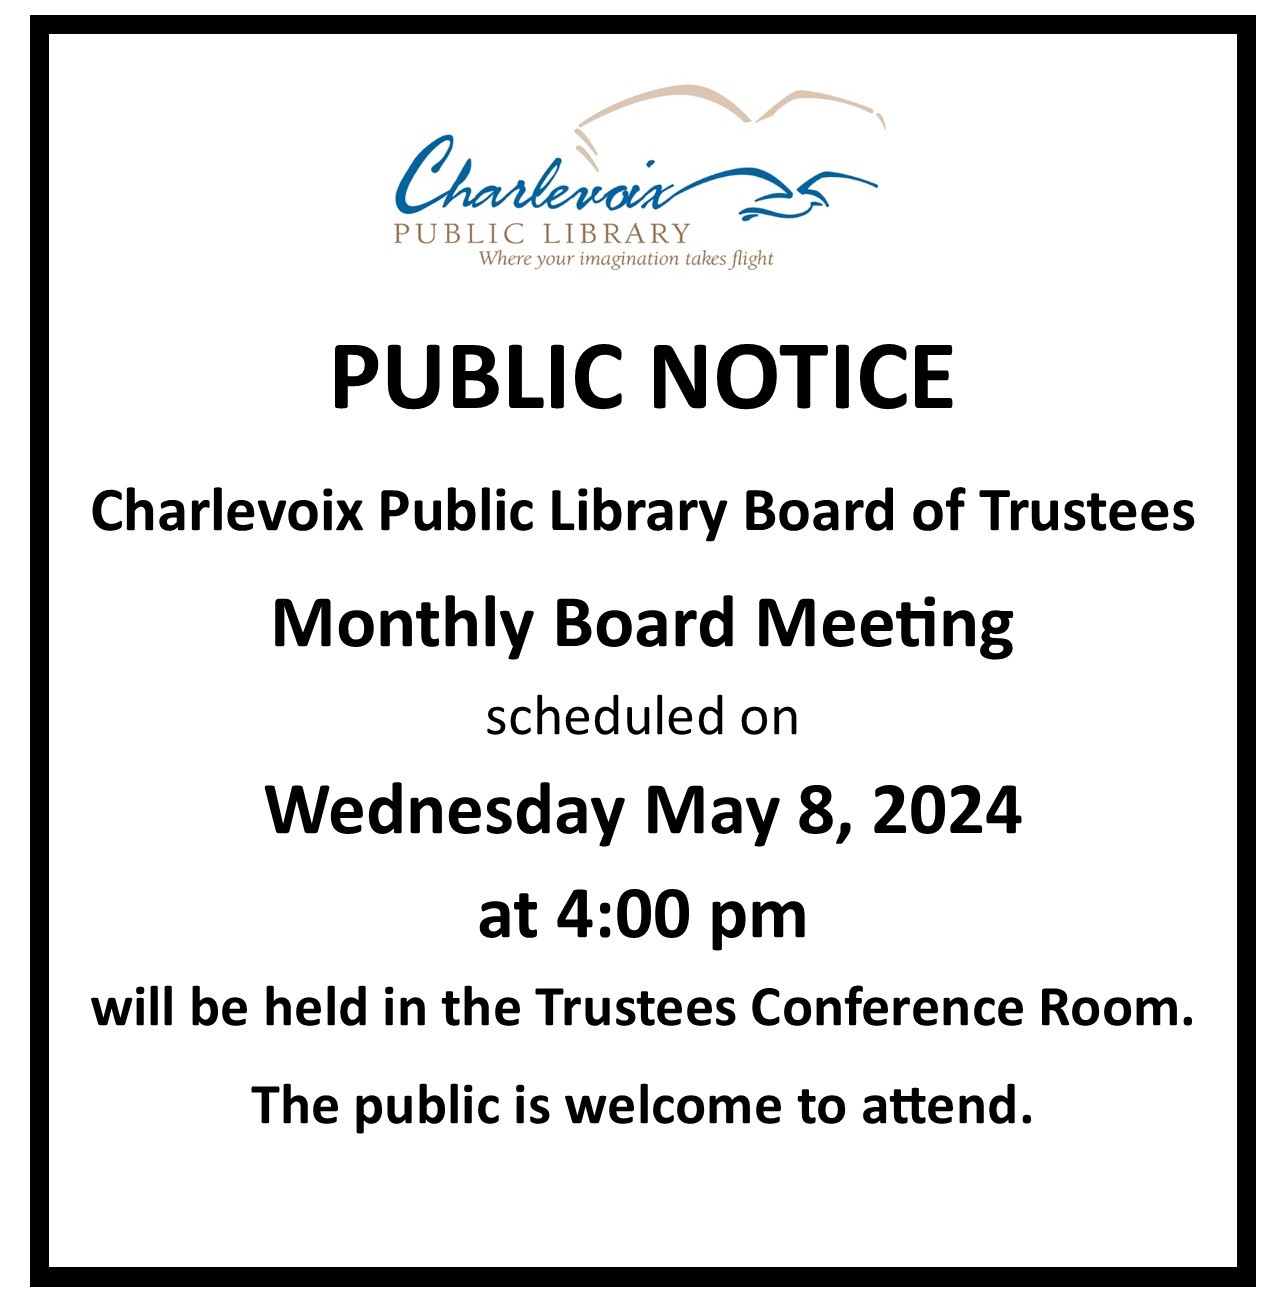 Board Meeting May 8, 2024